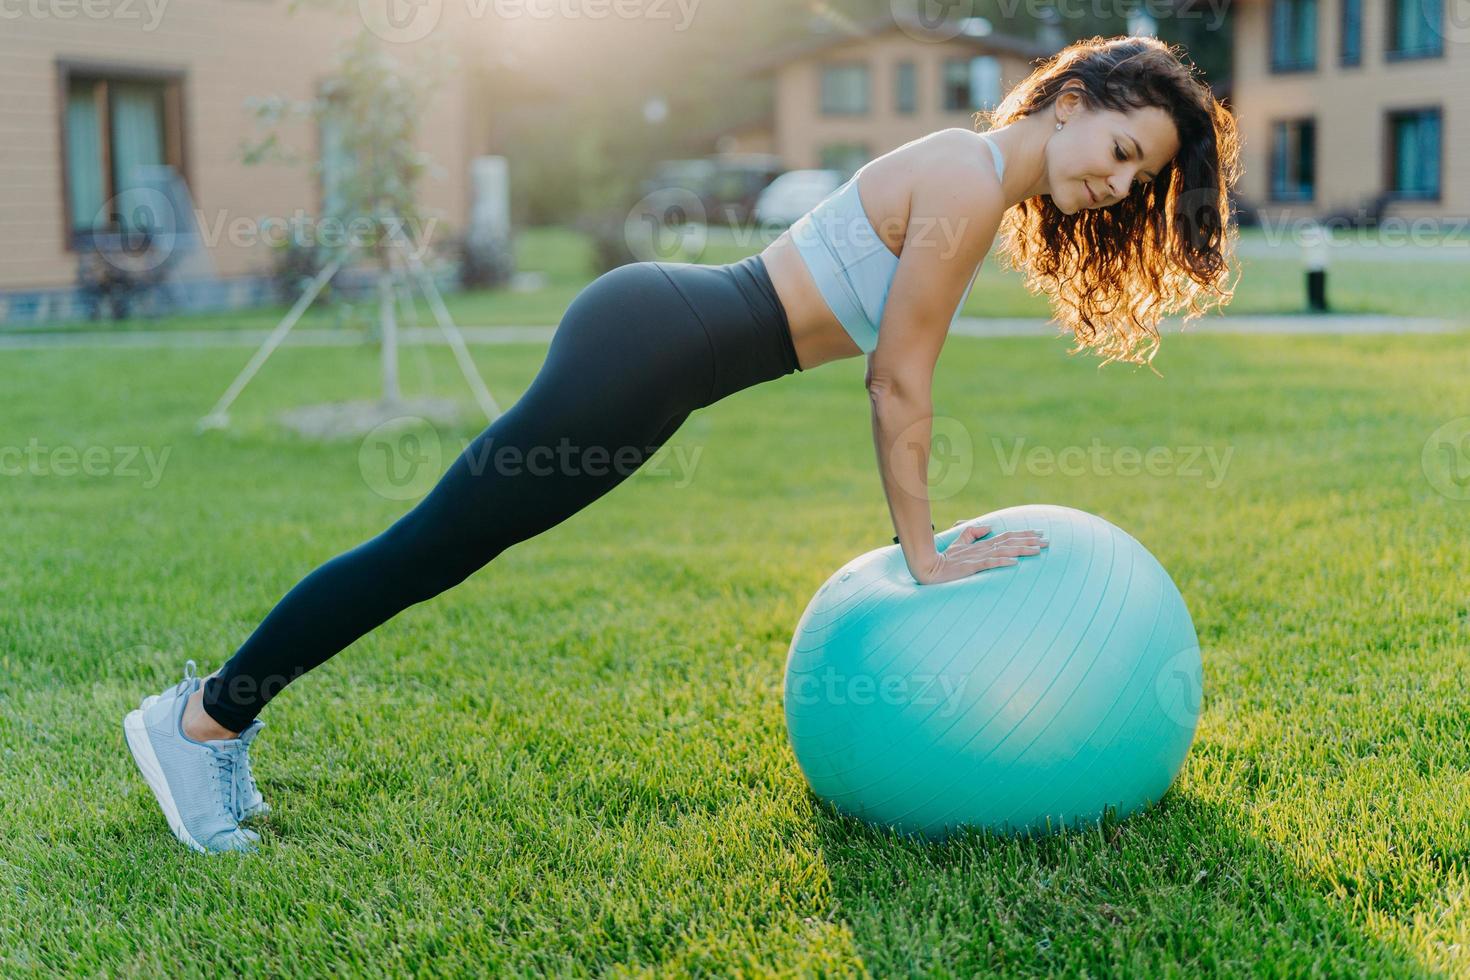 aktive fitnessfrau turnt im freien mit aufgeblasenem fitball, trainiert aktiv, macht körperliche übungen im freien, trägt sportkleidung und trainiert auf grünem gras. aktives Lifestyle-Konzept foto